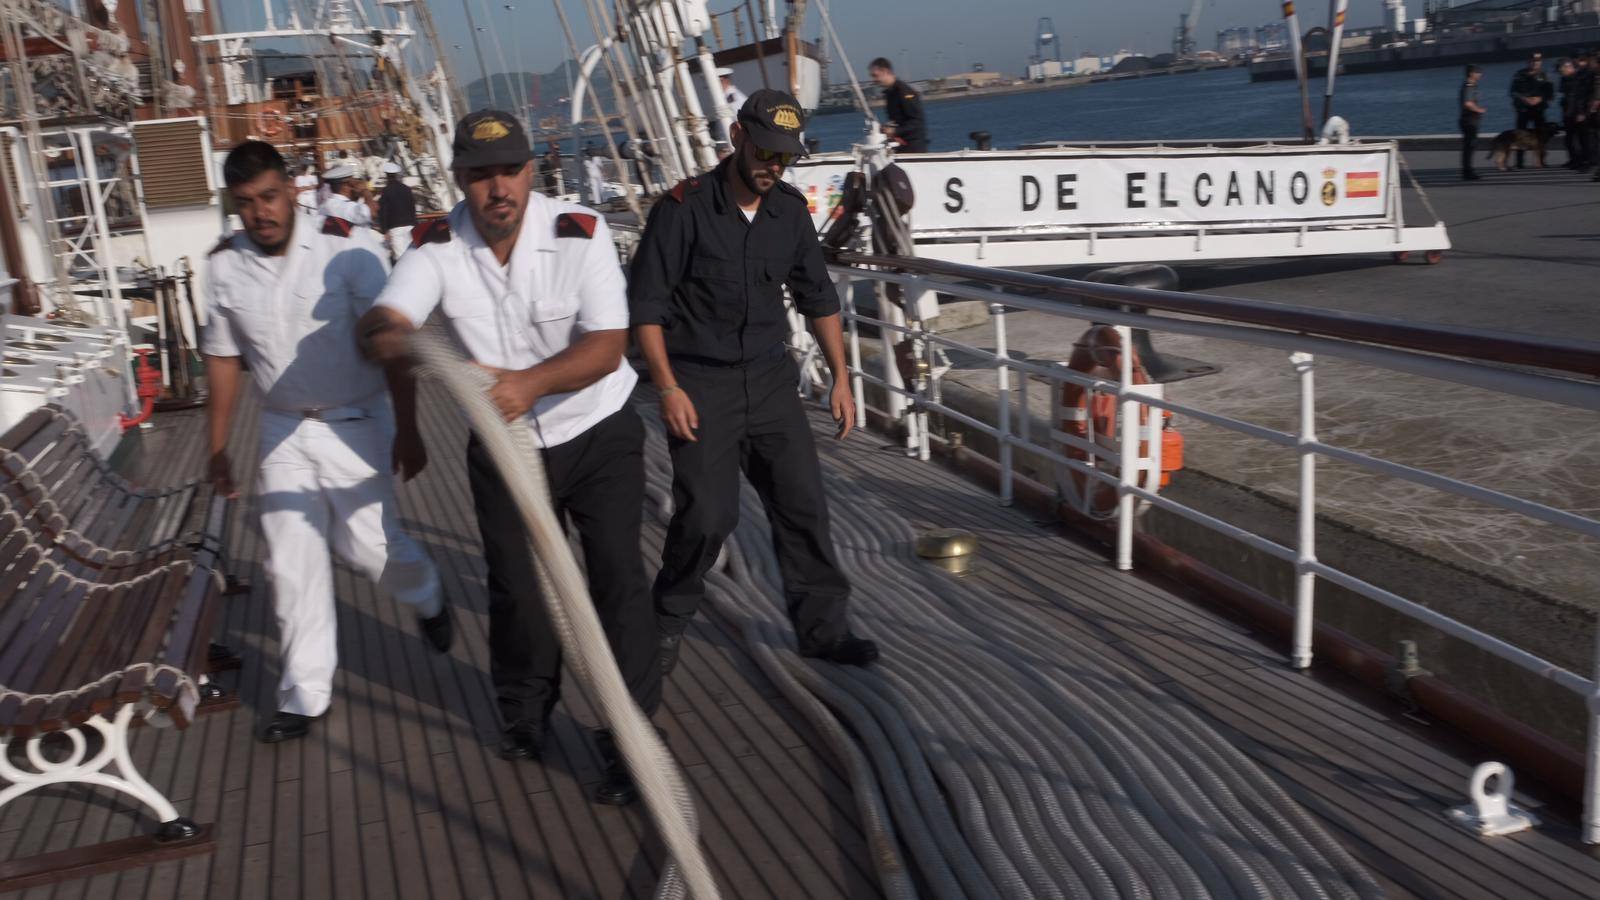 FOTOS: Elcano leva anclas tras recibir a miles de personas en Getxo